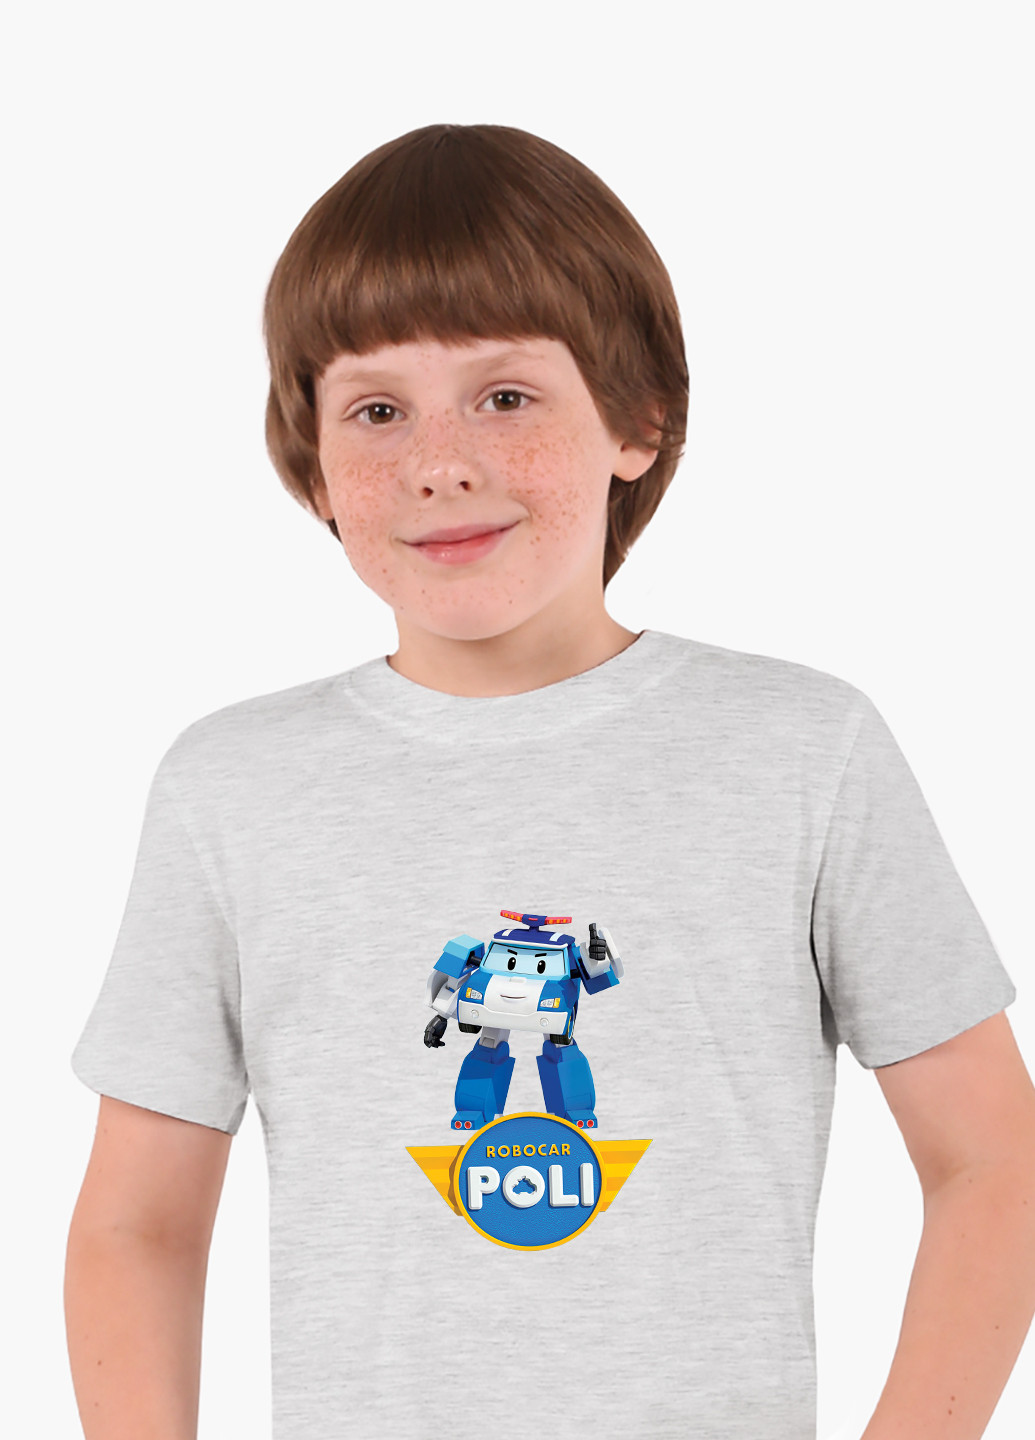 Світло-сіра демісезонна футболка дитяча робокар полі (robocar poli) (9224-1620) MobiPrint